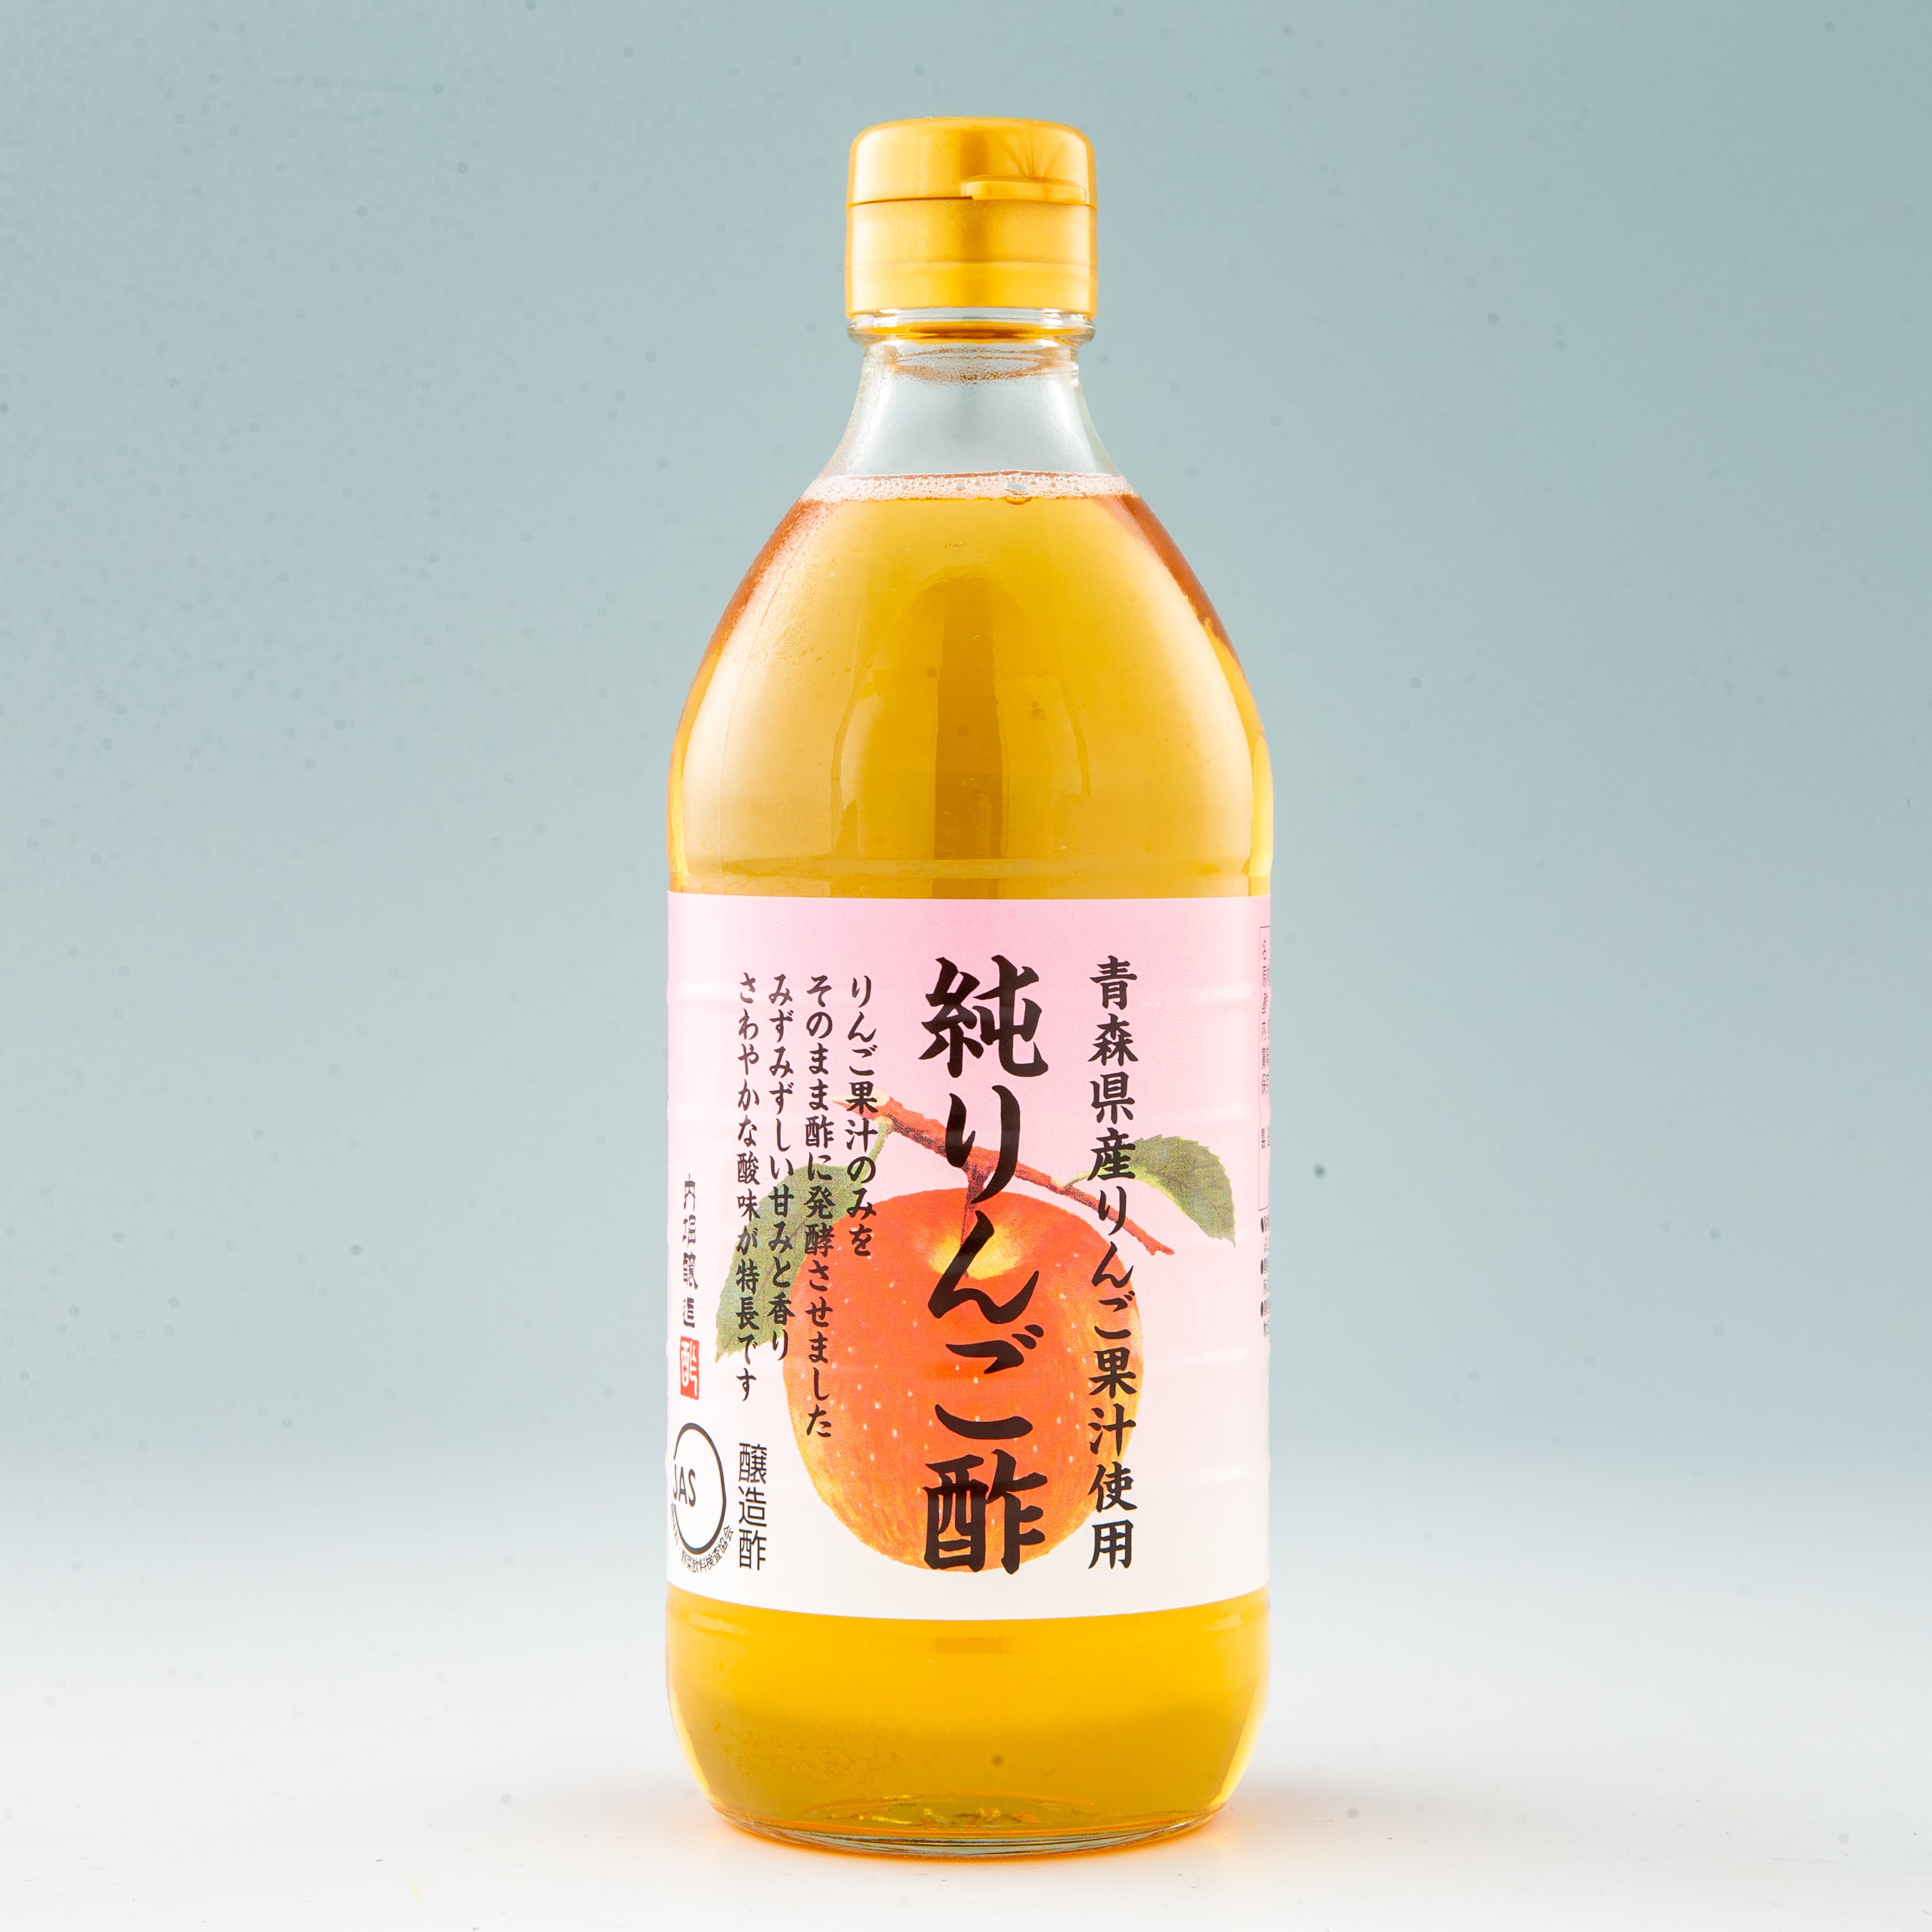 内堀醸造 純りんご酢 500ml | フードプラザにしだ 公式オンラインショップ | 熊本からからだにやさしい商品を発送